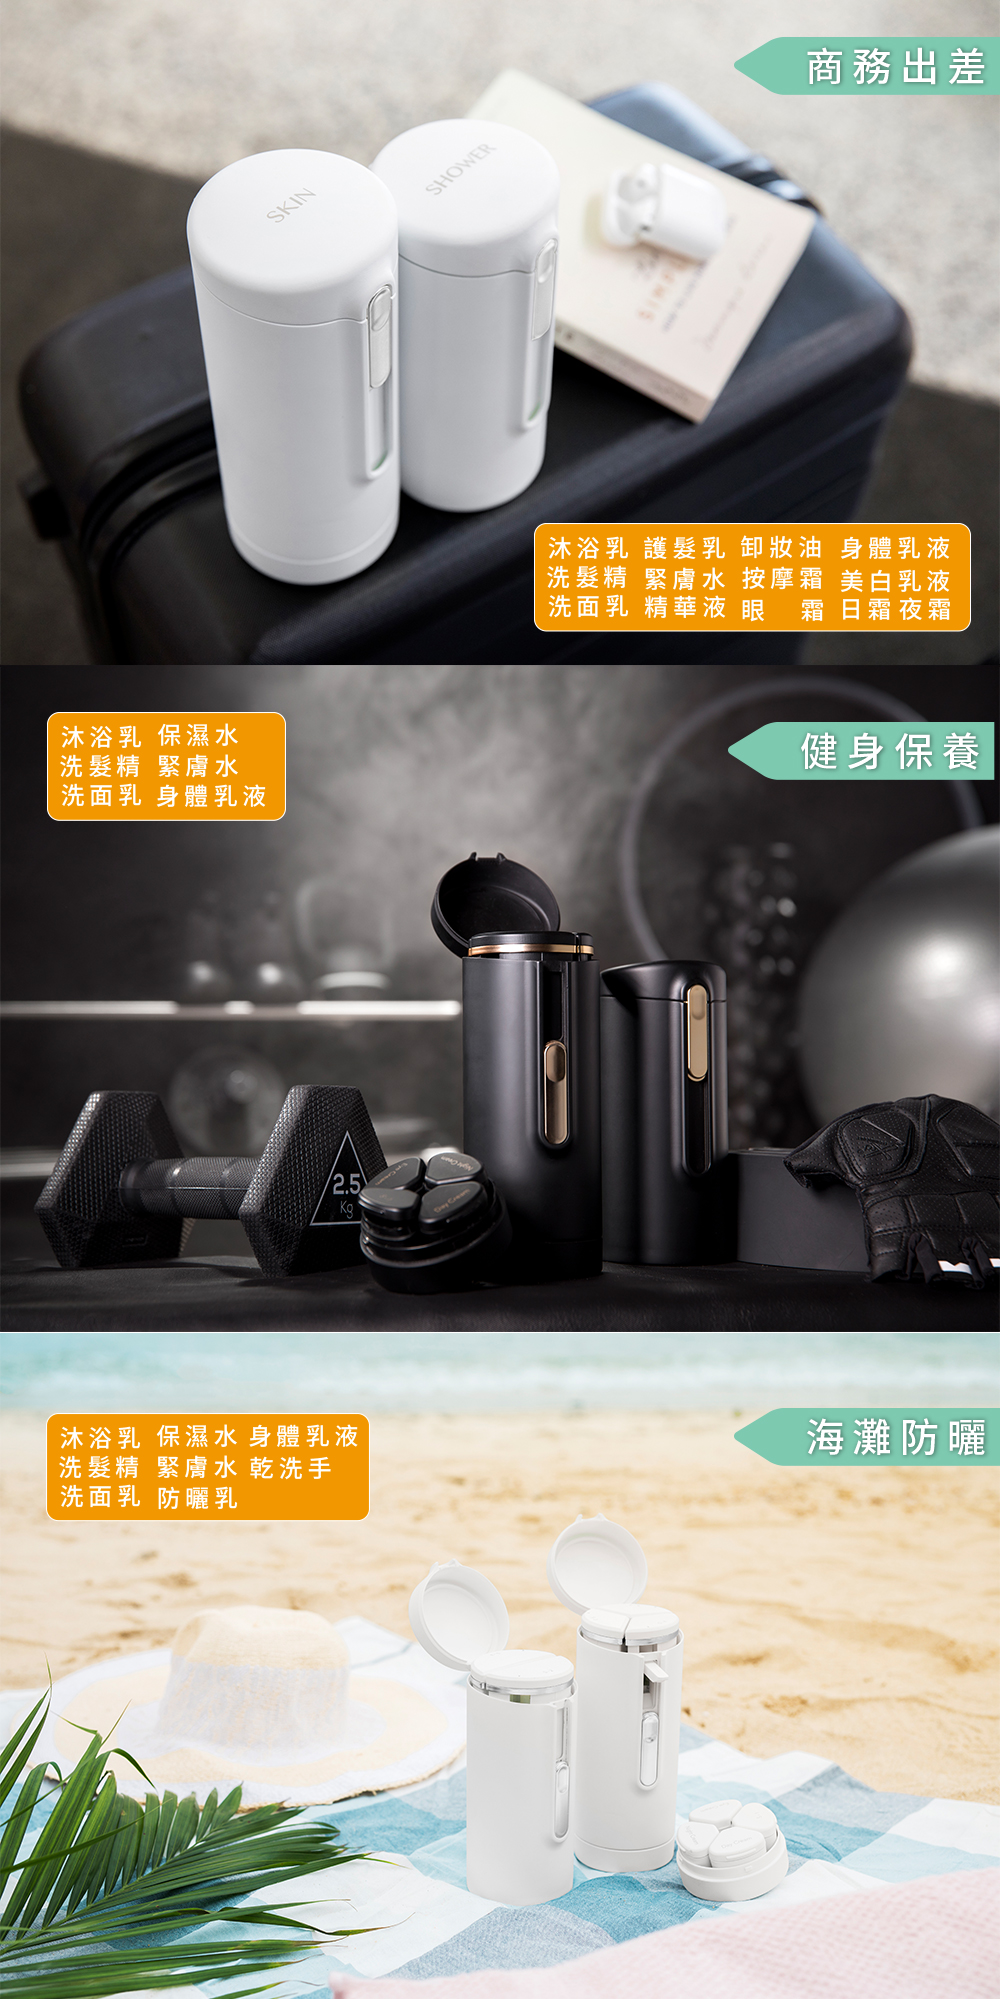 【新品】香港 Tic Design 旅行分裝收納瓶 V2.0 沐浴組精選套裝-珍珠白